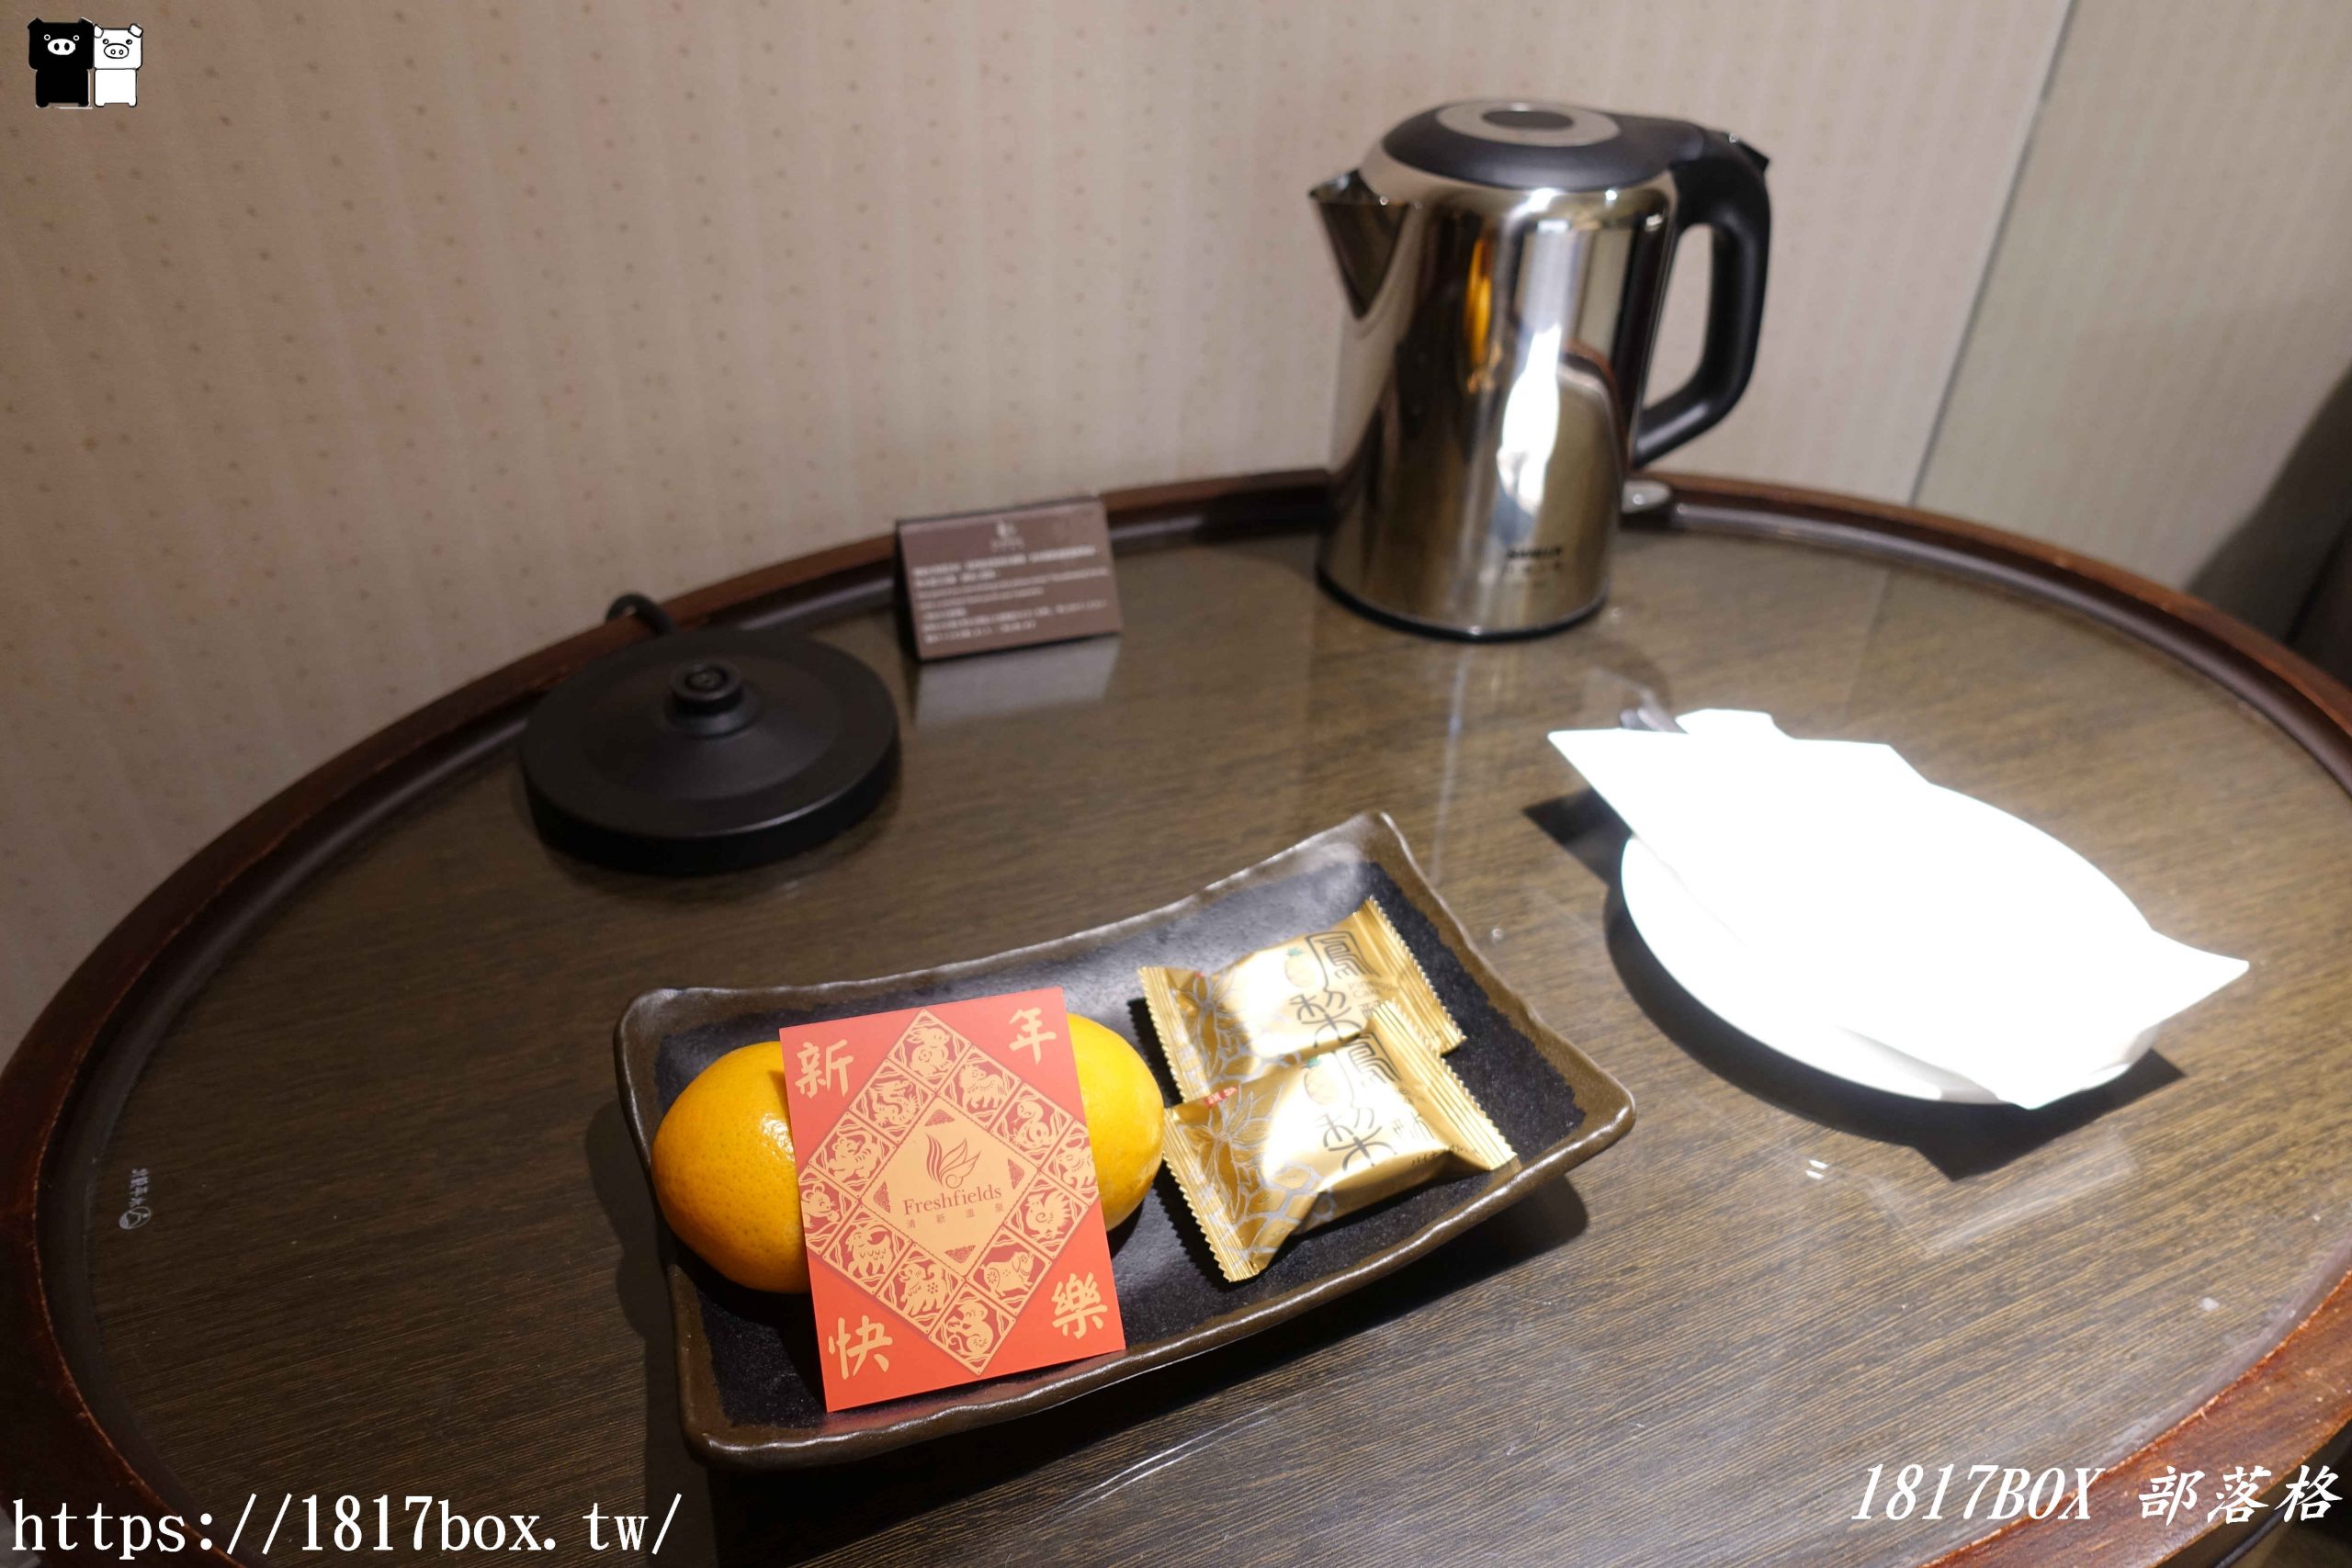 【台中。烏日】清新溫泉飯店。一泊二食 @1817BOX部落格